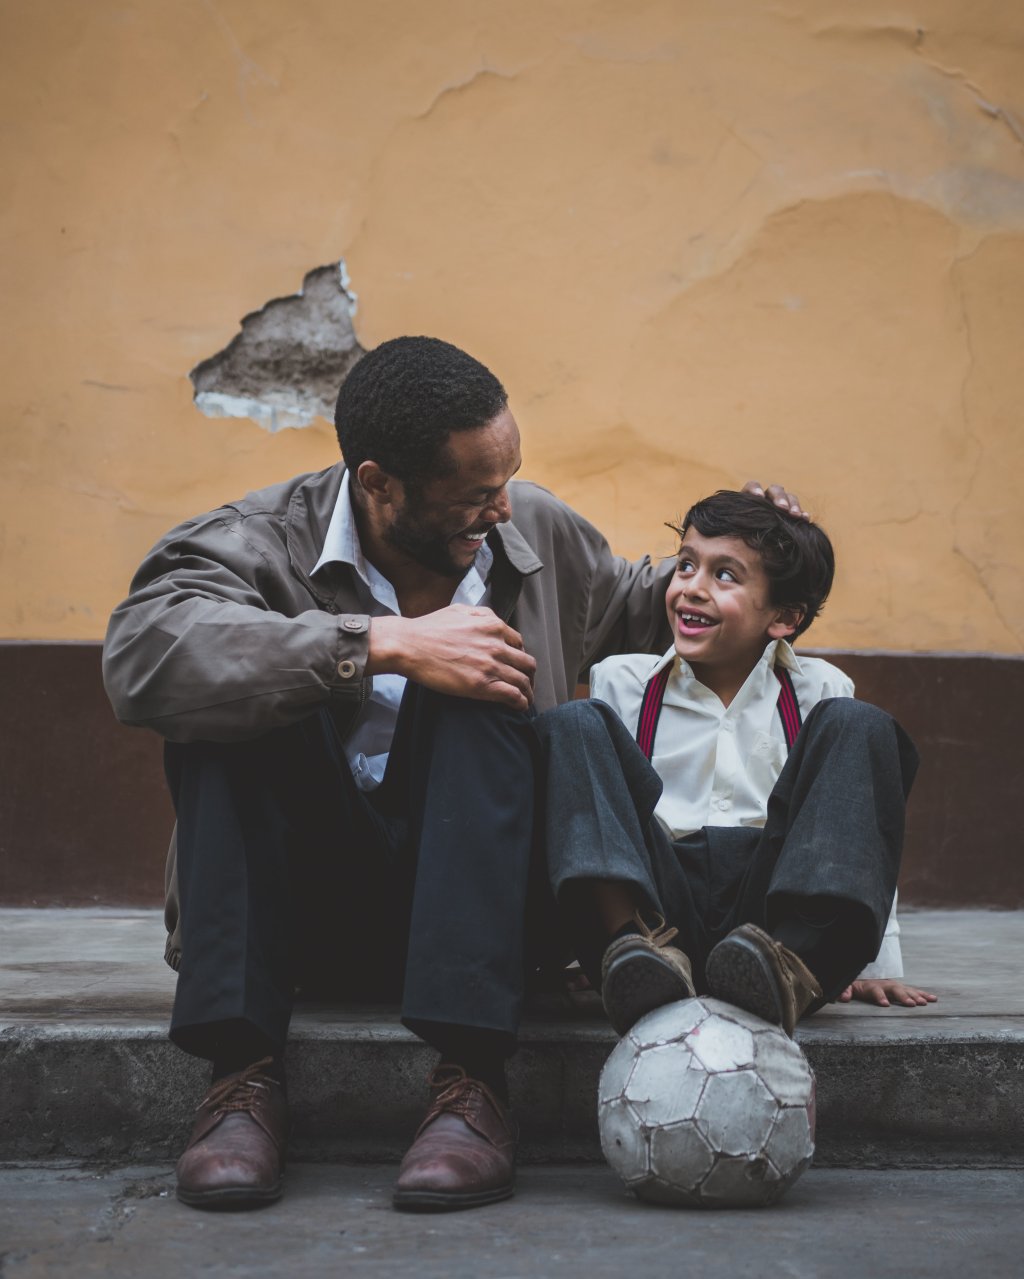 Foto de homem ao lado de criança que está com bola de futebol no pé, simbolizando dia dos pais.